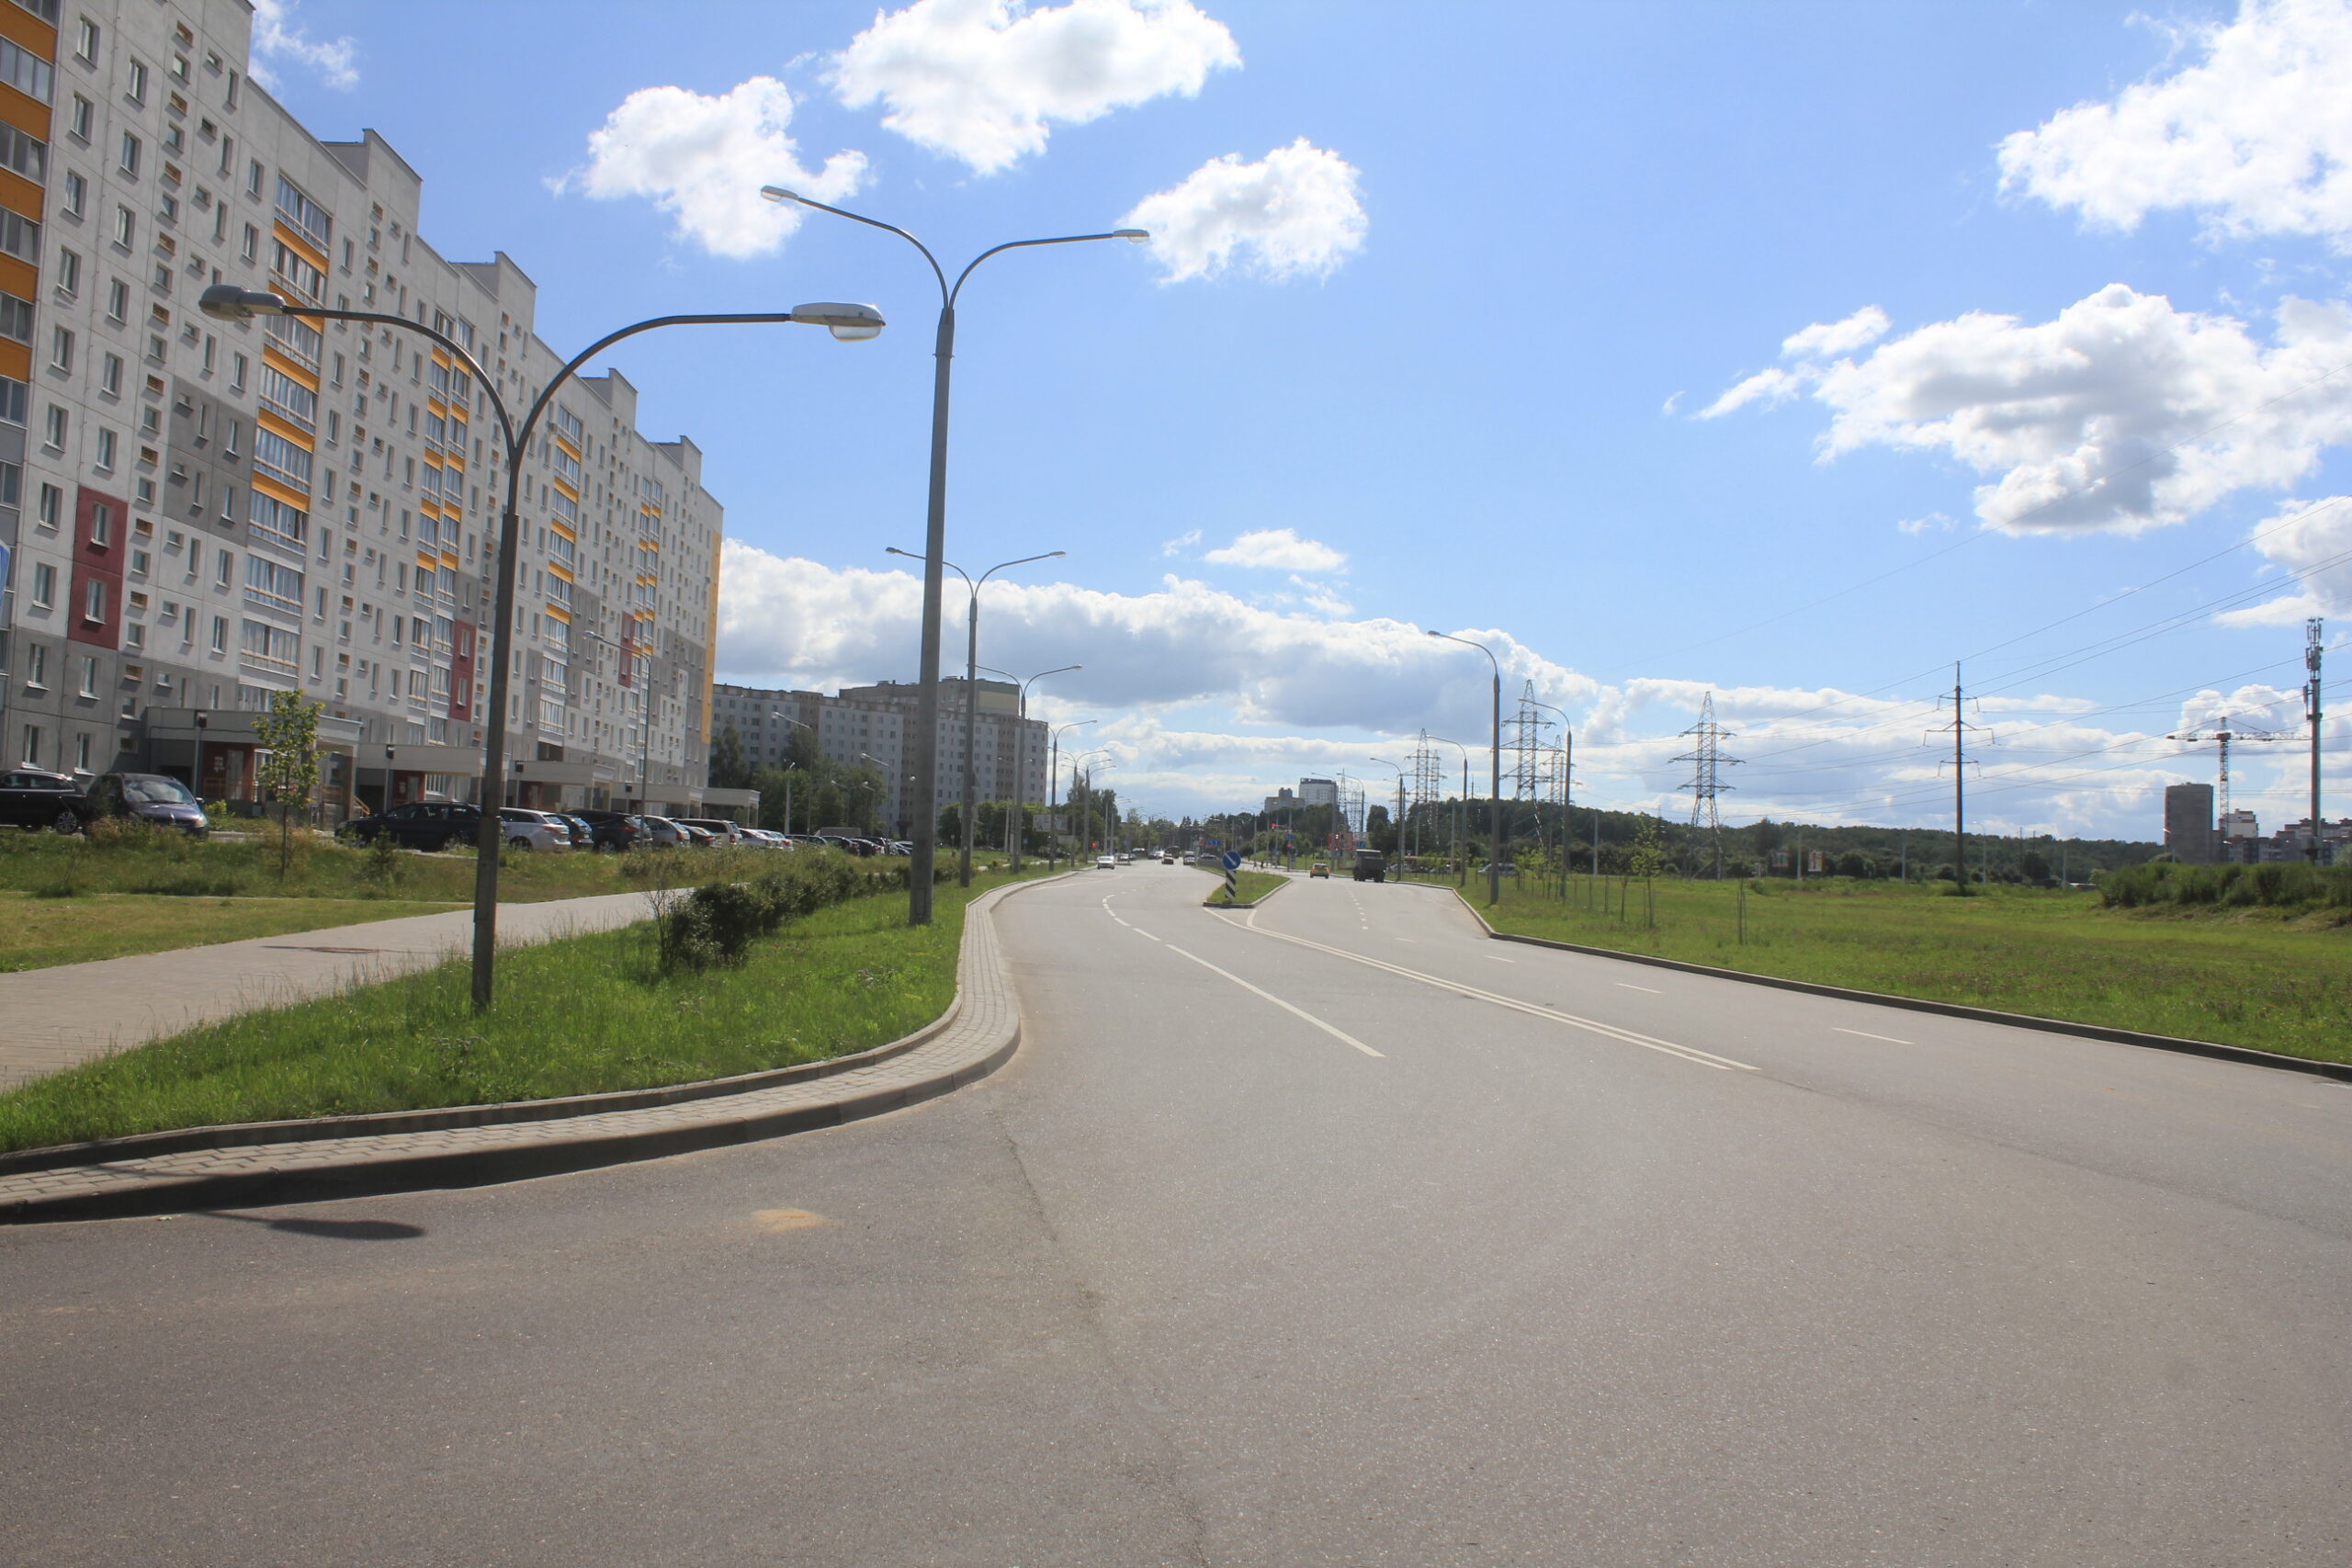 Реконструкция застройки территории в районе ул. Михалово, Алибегова. Генплан, инженерные сети